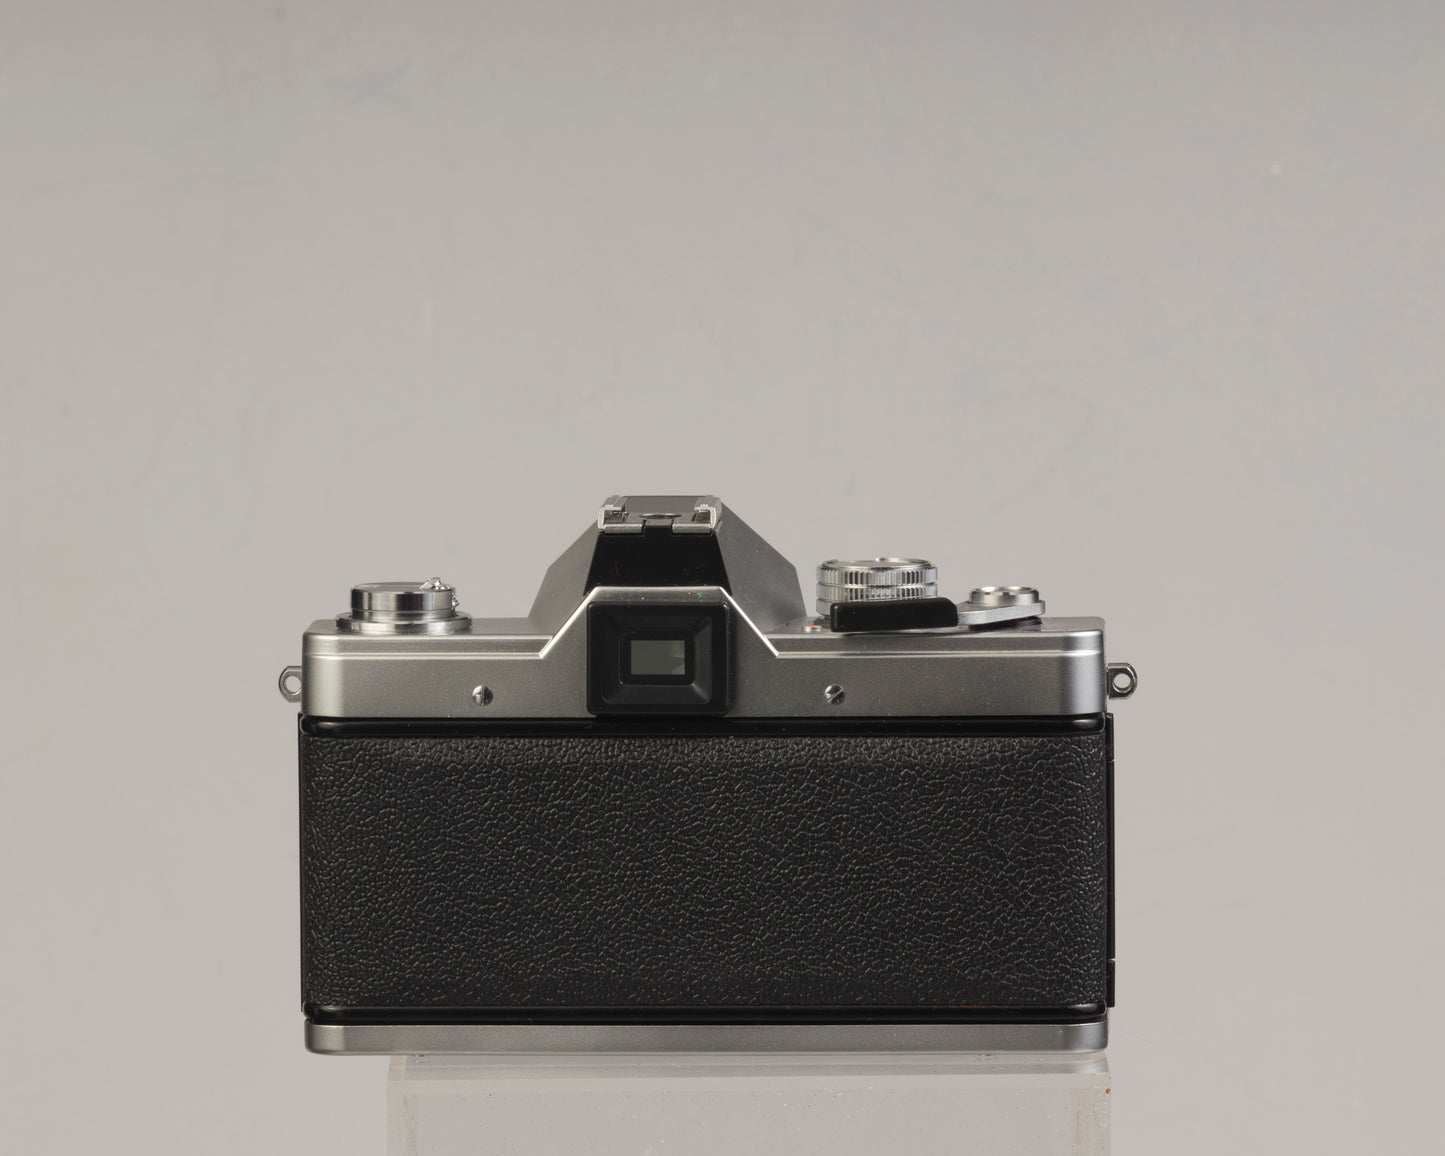 Praktica LTL 3 35mm film SLR camera w/Pentacon 50mm f1.8 lens and original case